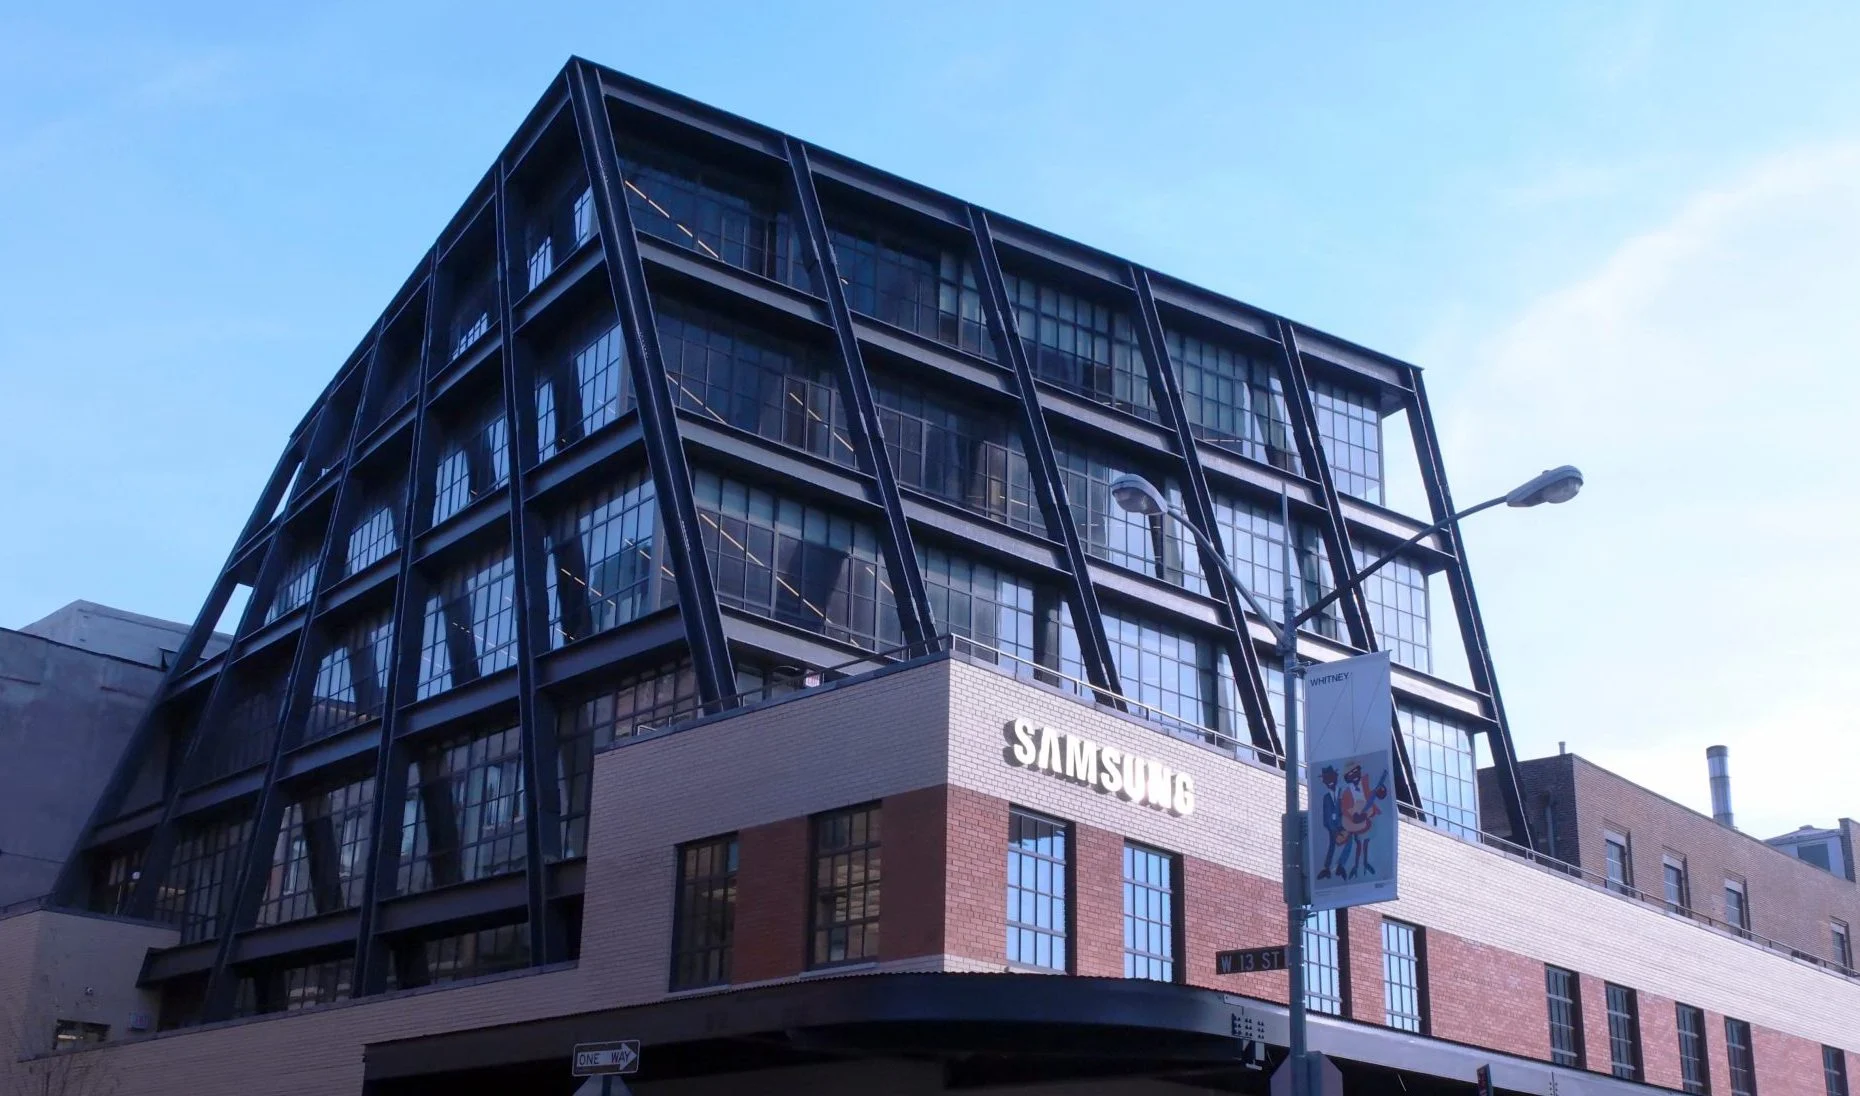 Samsung входит в метавселенную, открывая свой флагманский магазин 837 в Decentraland